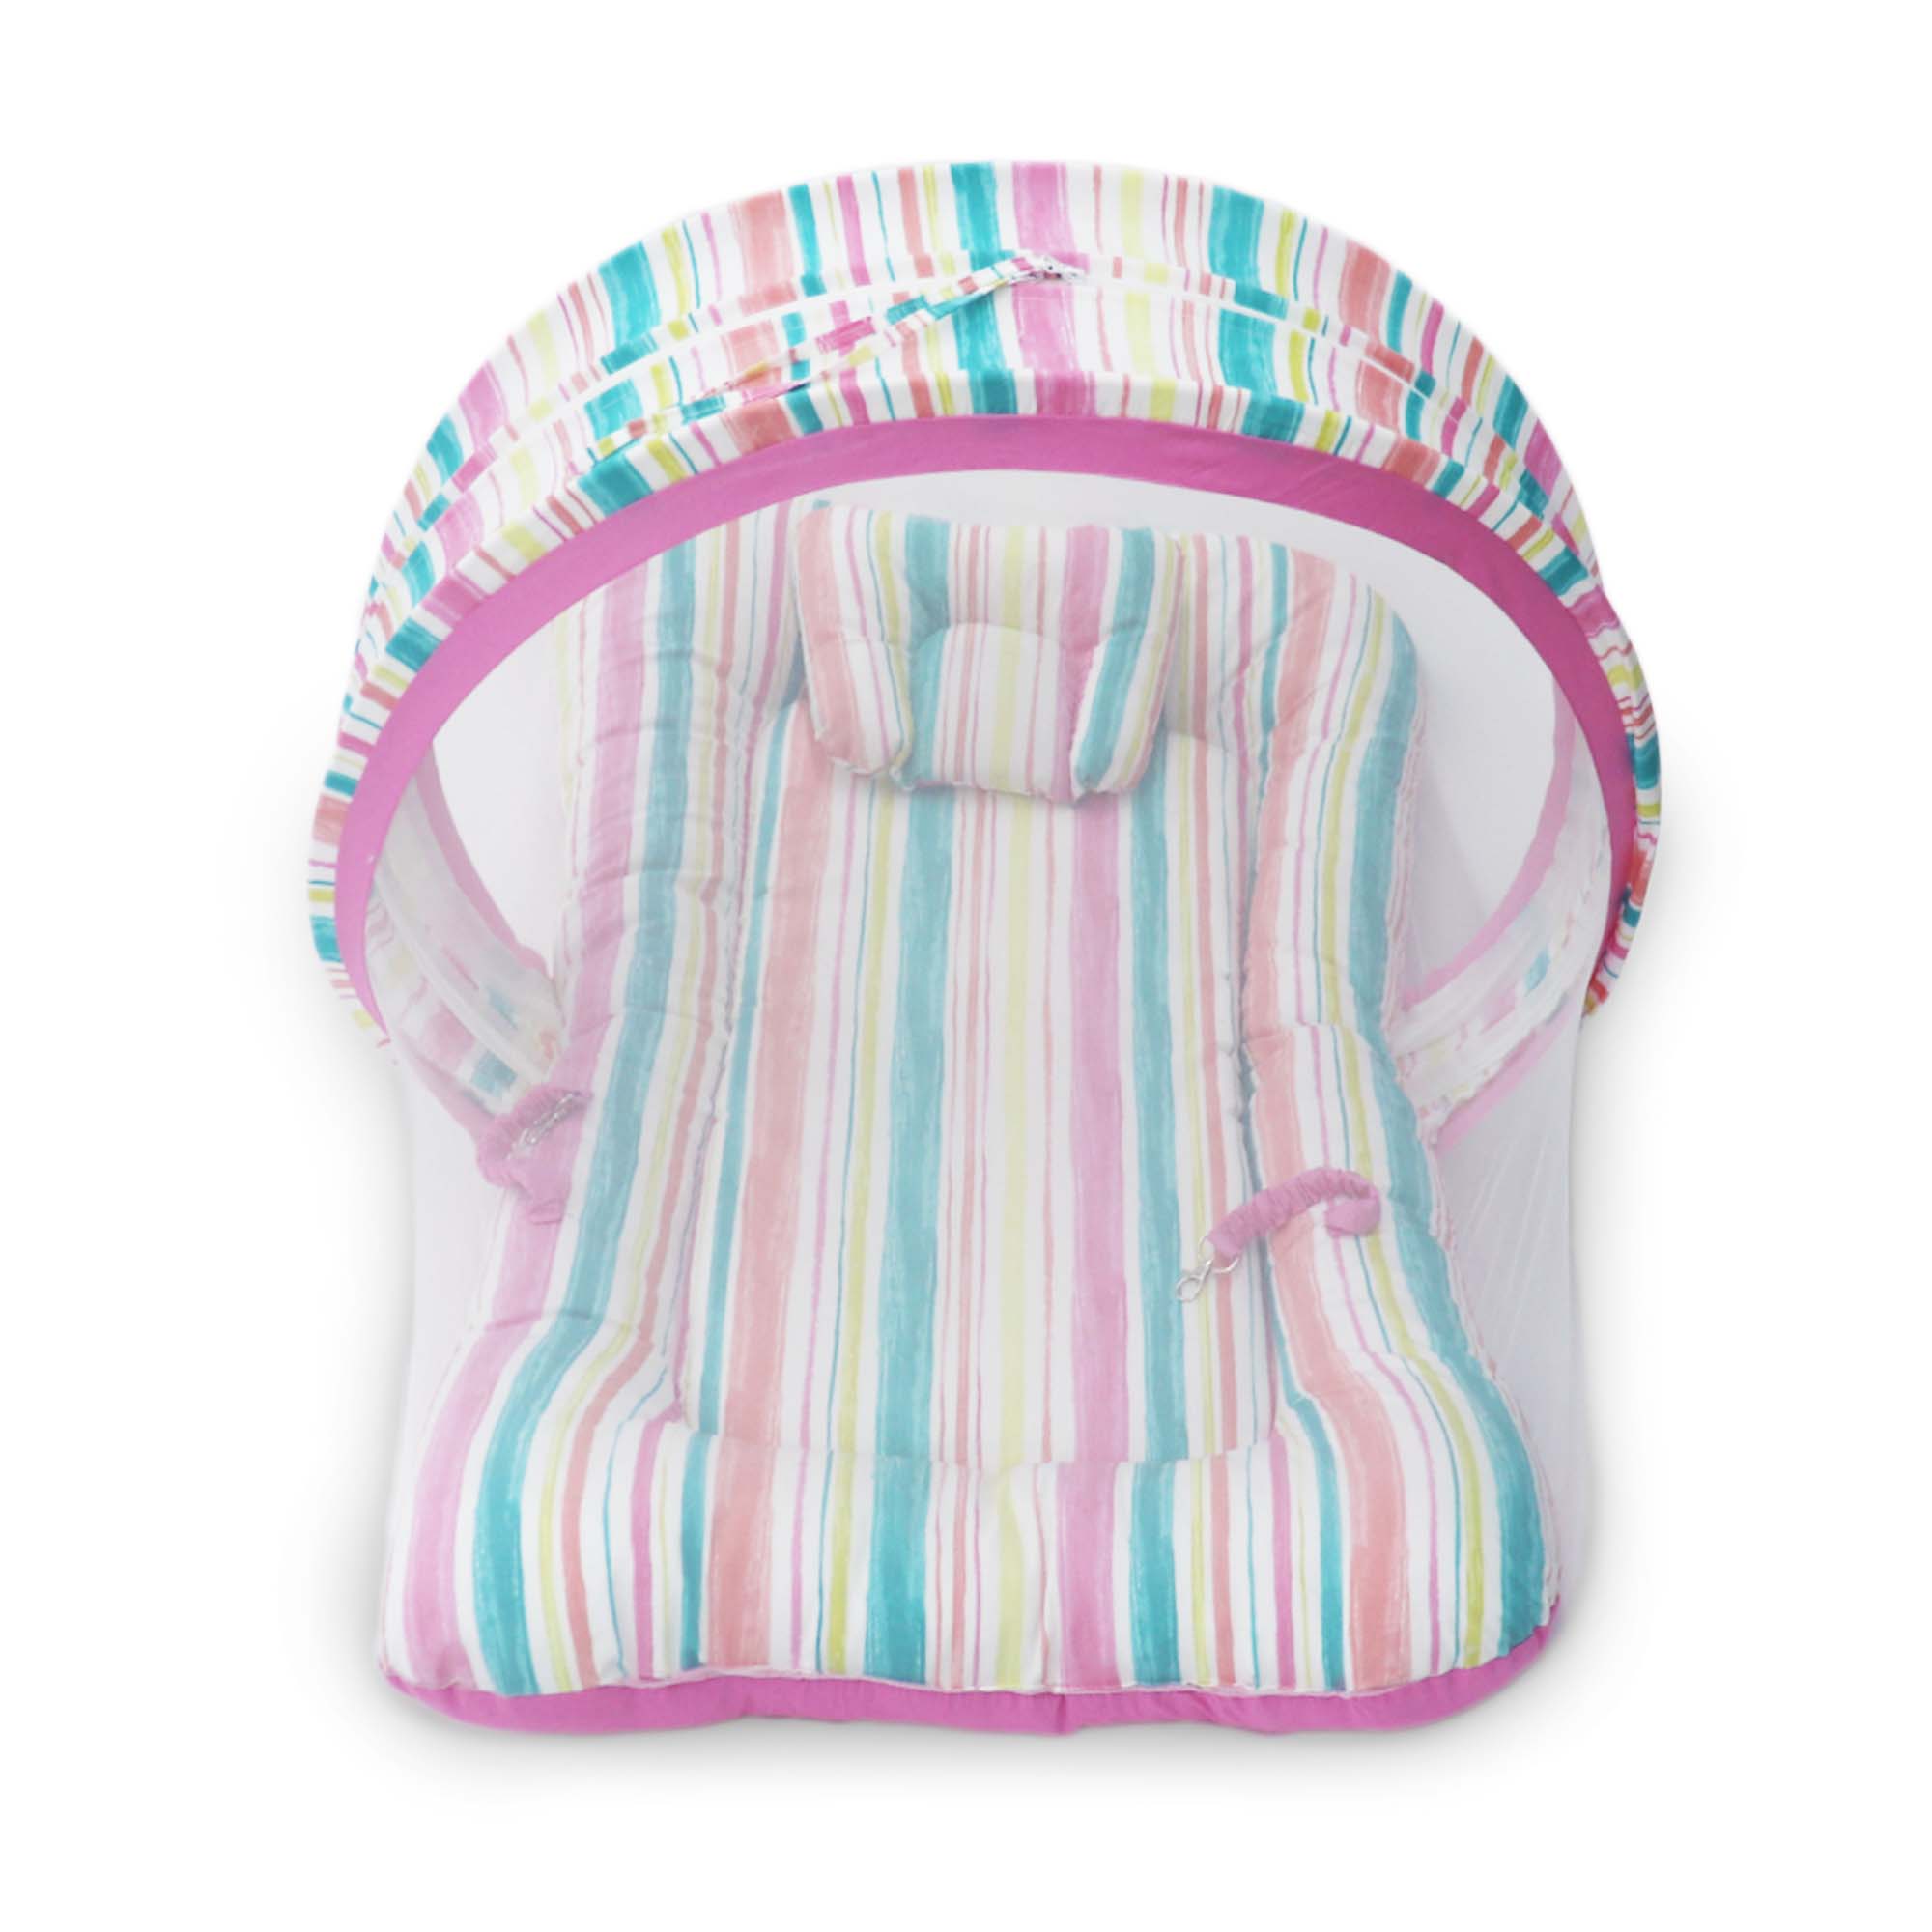 Brush Stroke -  Kradyl Kroft Bassinet Style Mosquito Net Bedding for Infants